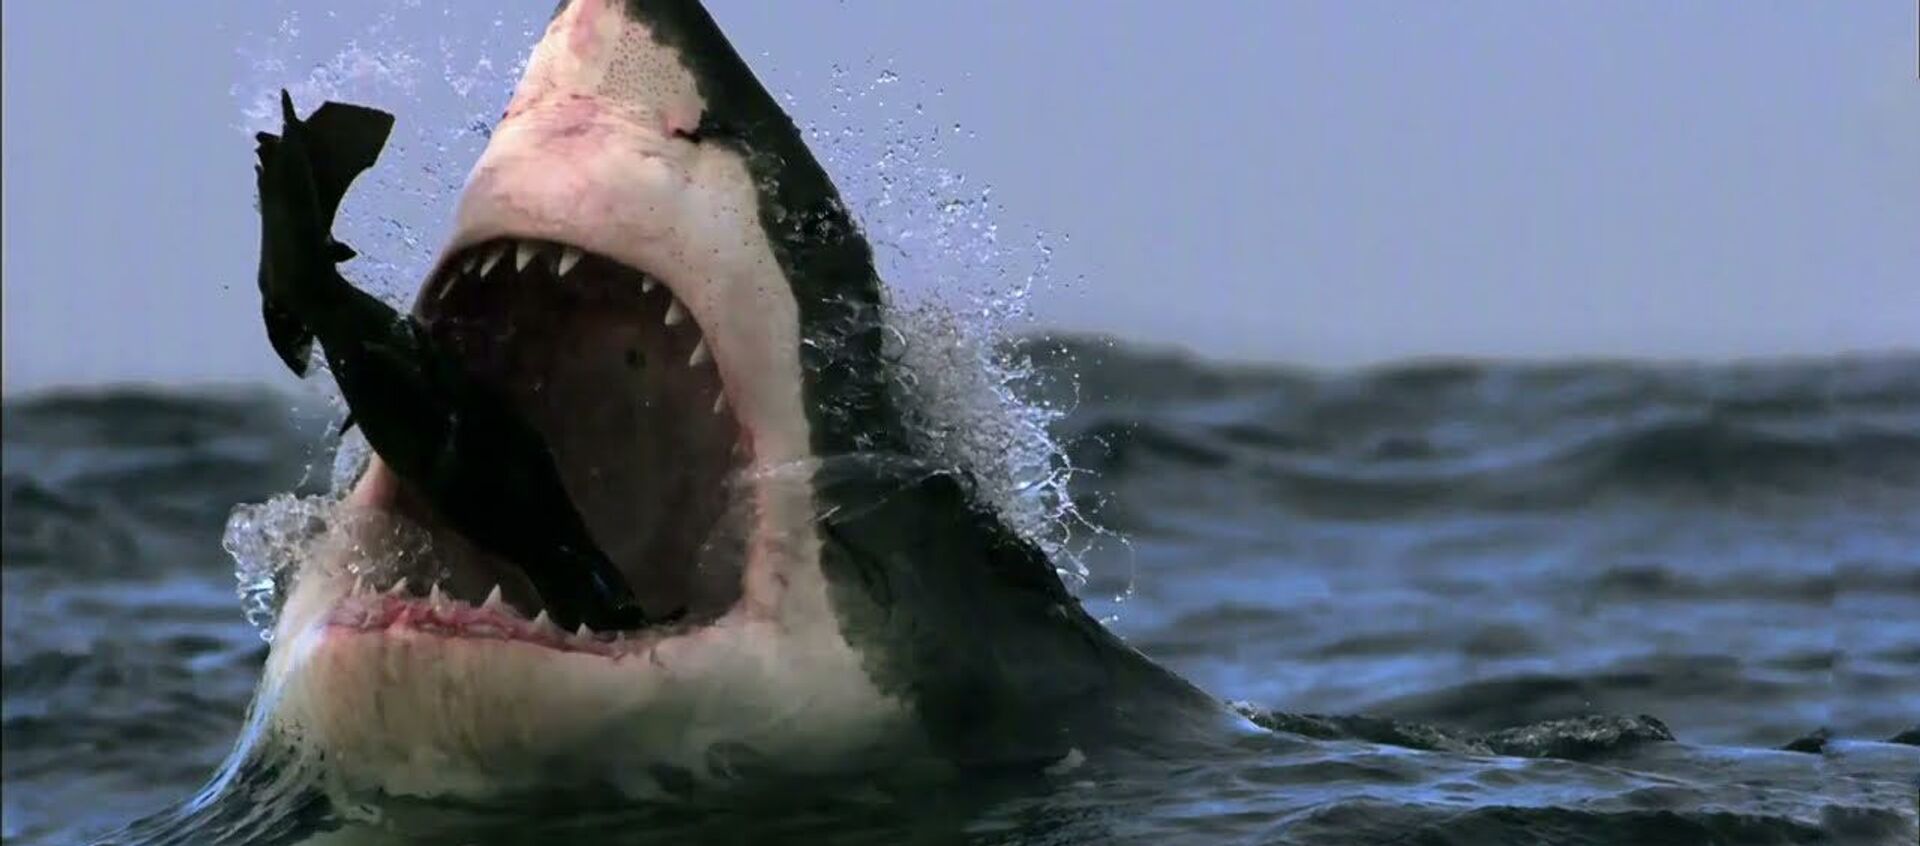 Эффектная охота большой белой акулы на морского котика — уникальное видео - Sputnik Кыргызстан, 1920, 26.08.2021